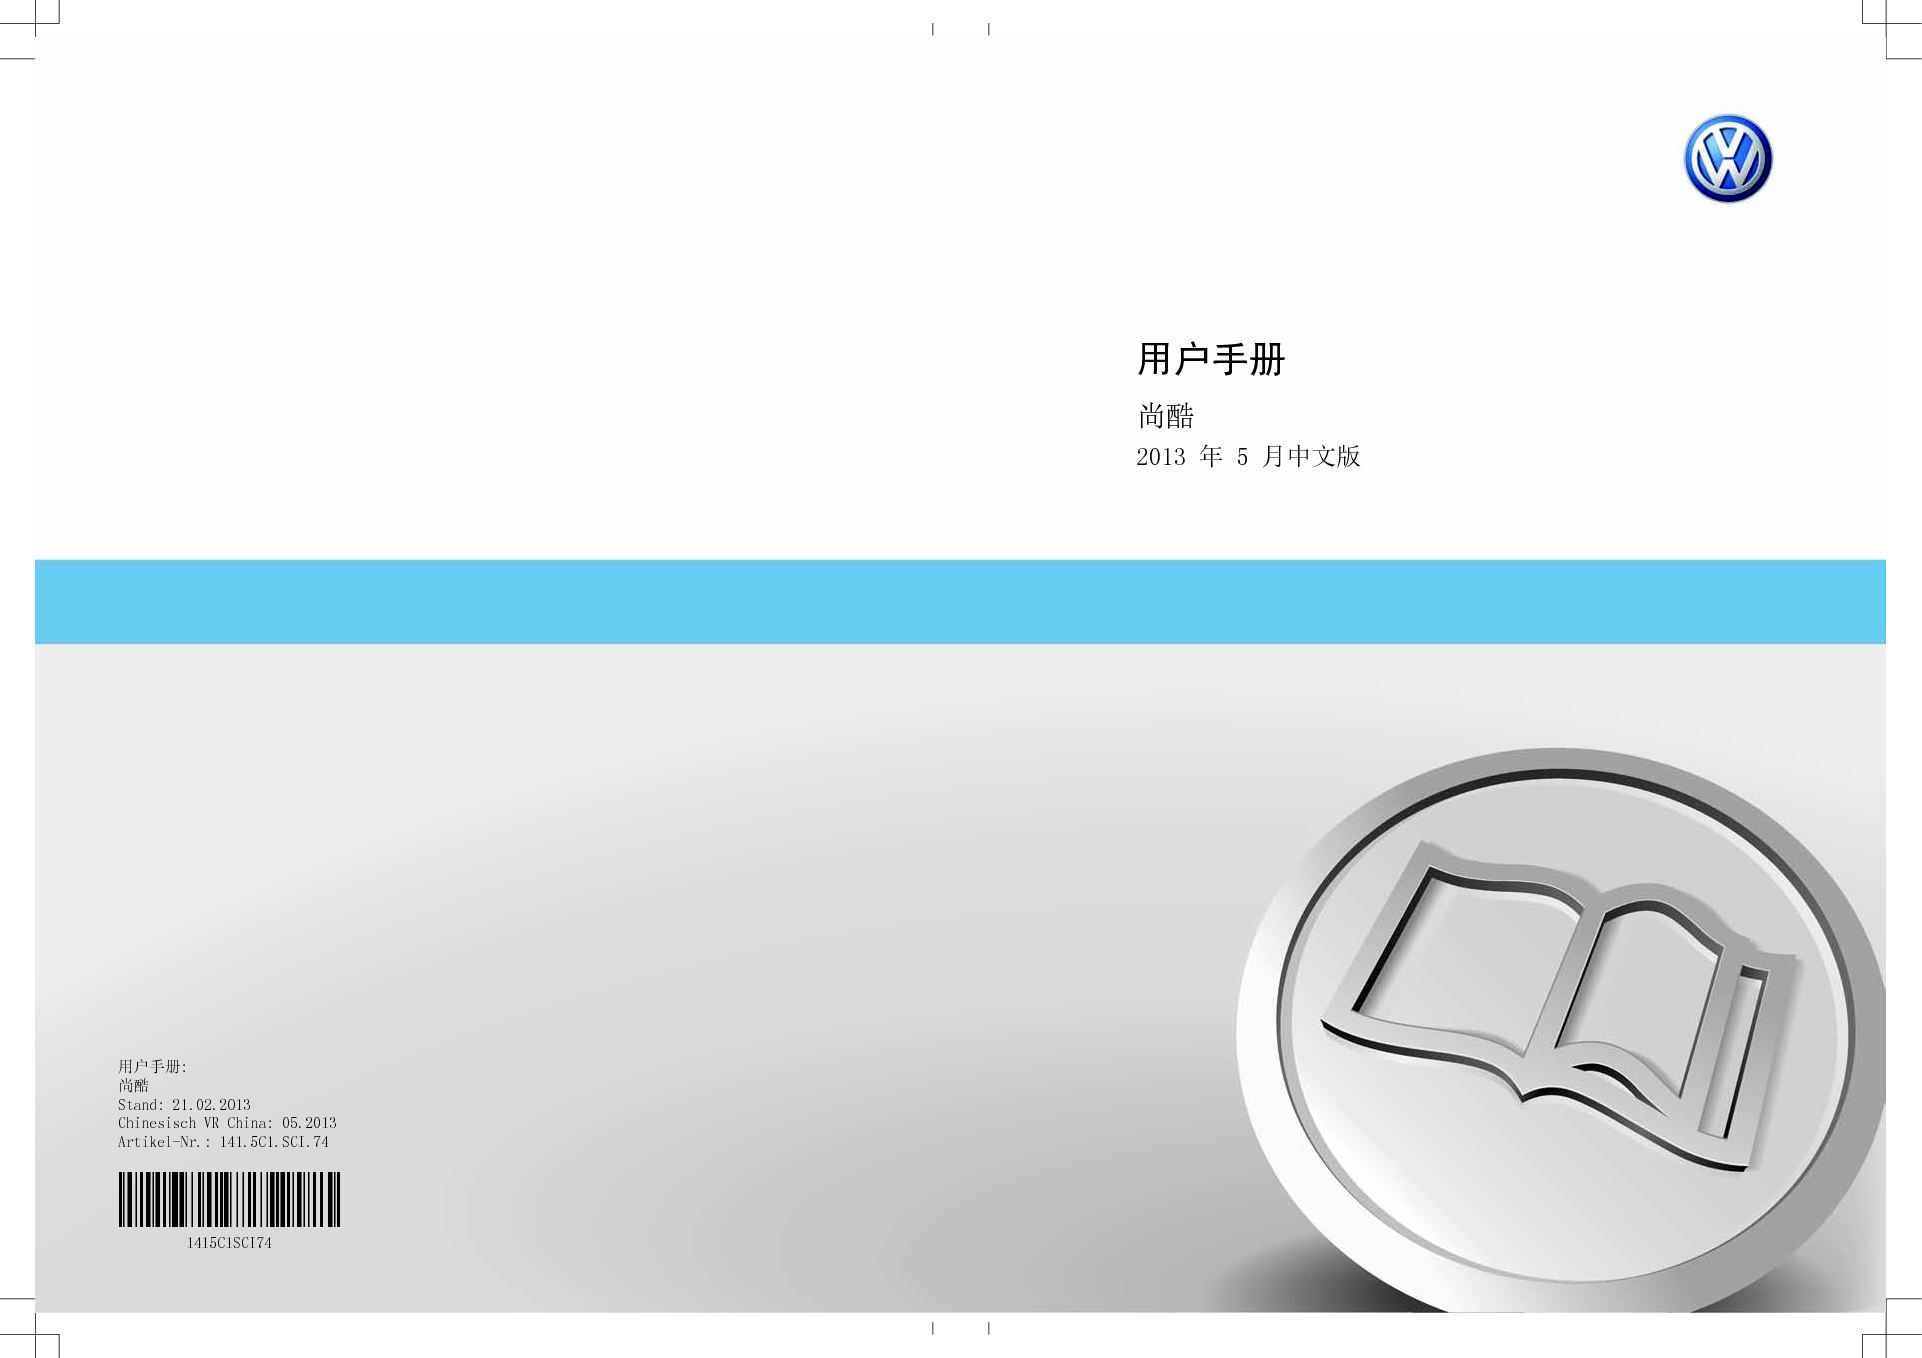 大众 Volkswagen SCIROCCO 尚酷 2013 用户手册 封面